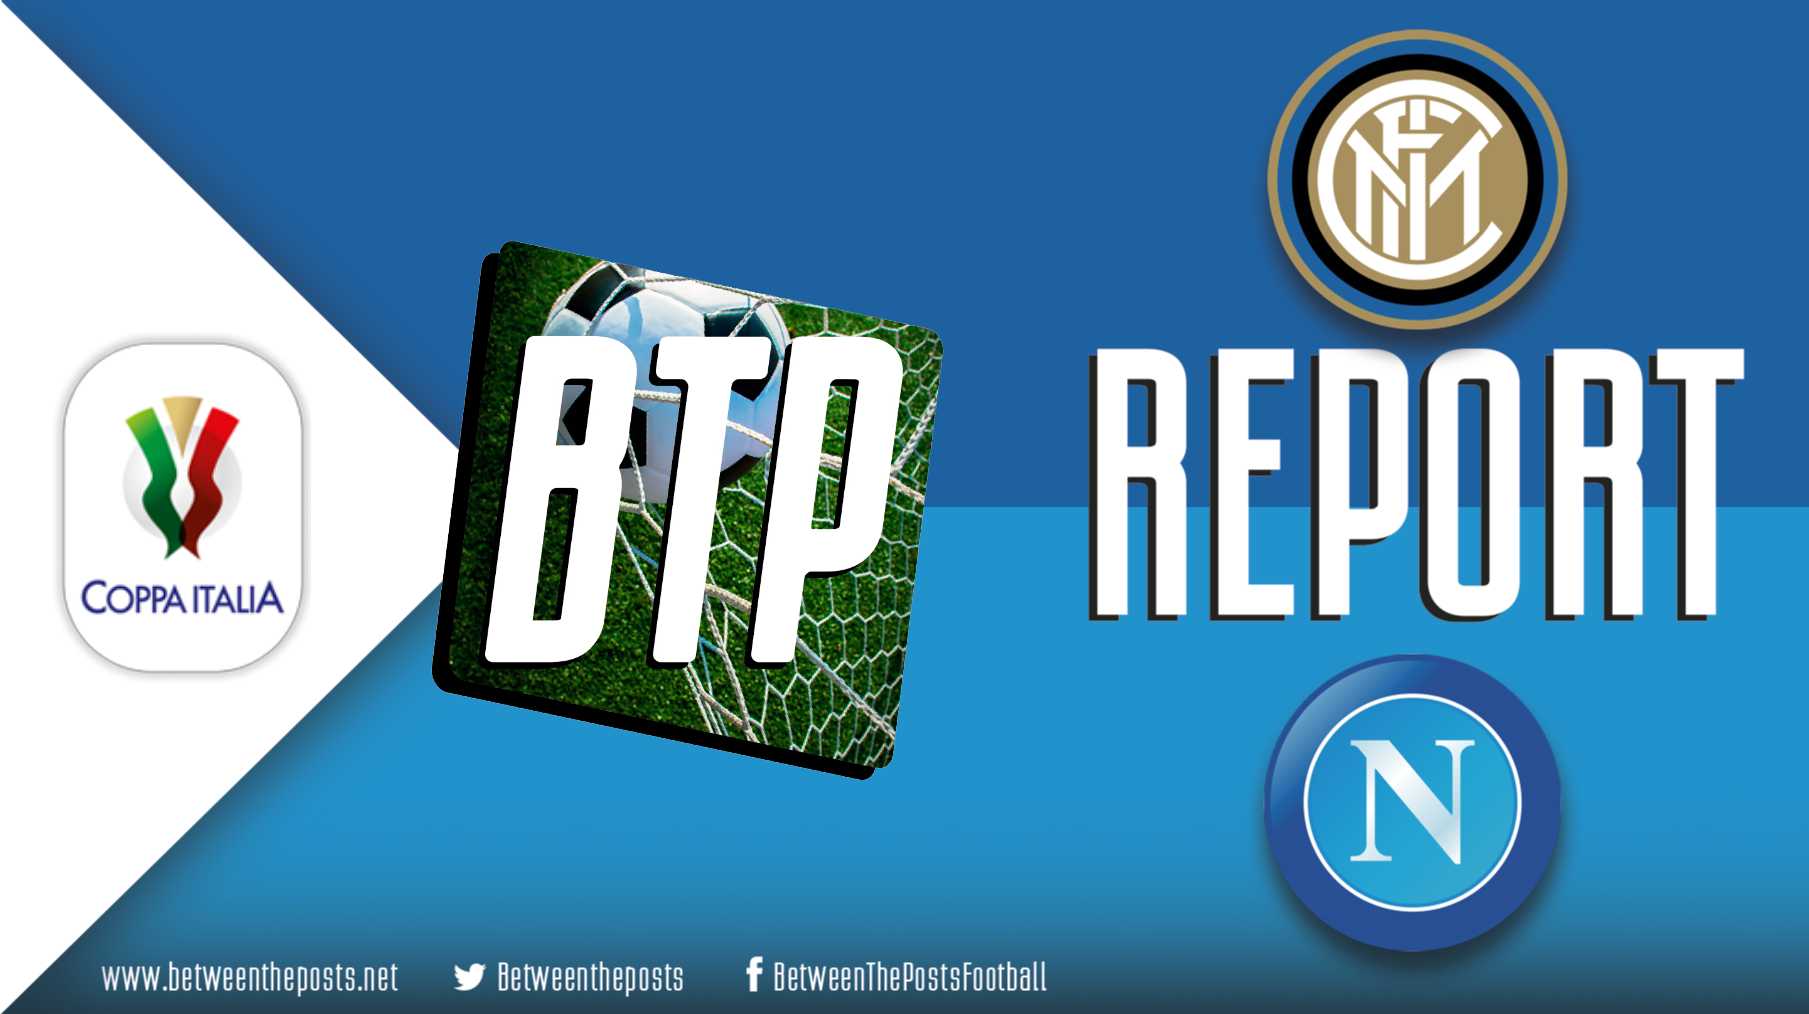 Tactical analysis Internazionale Napoli 0-1 Coppa Italia